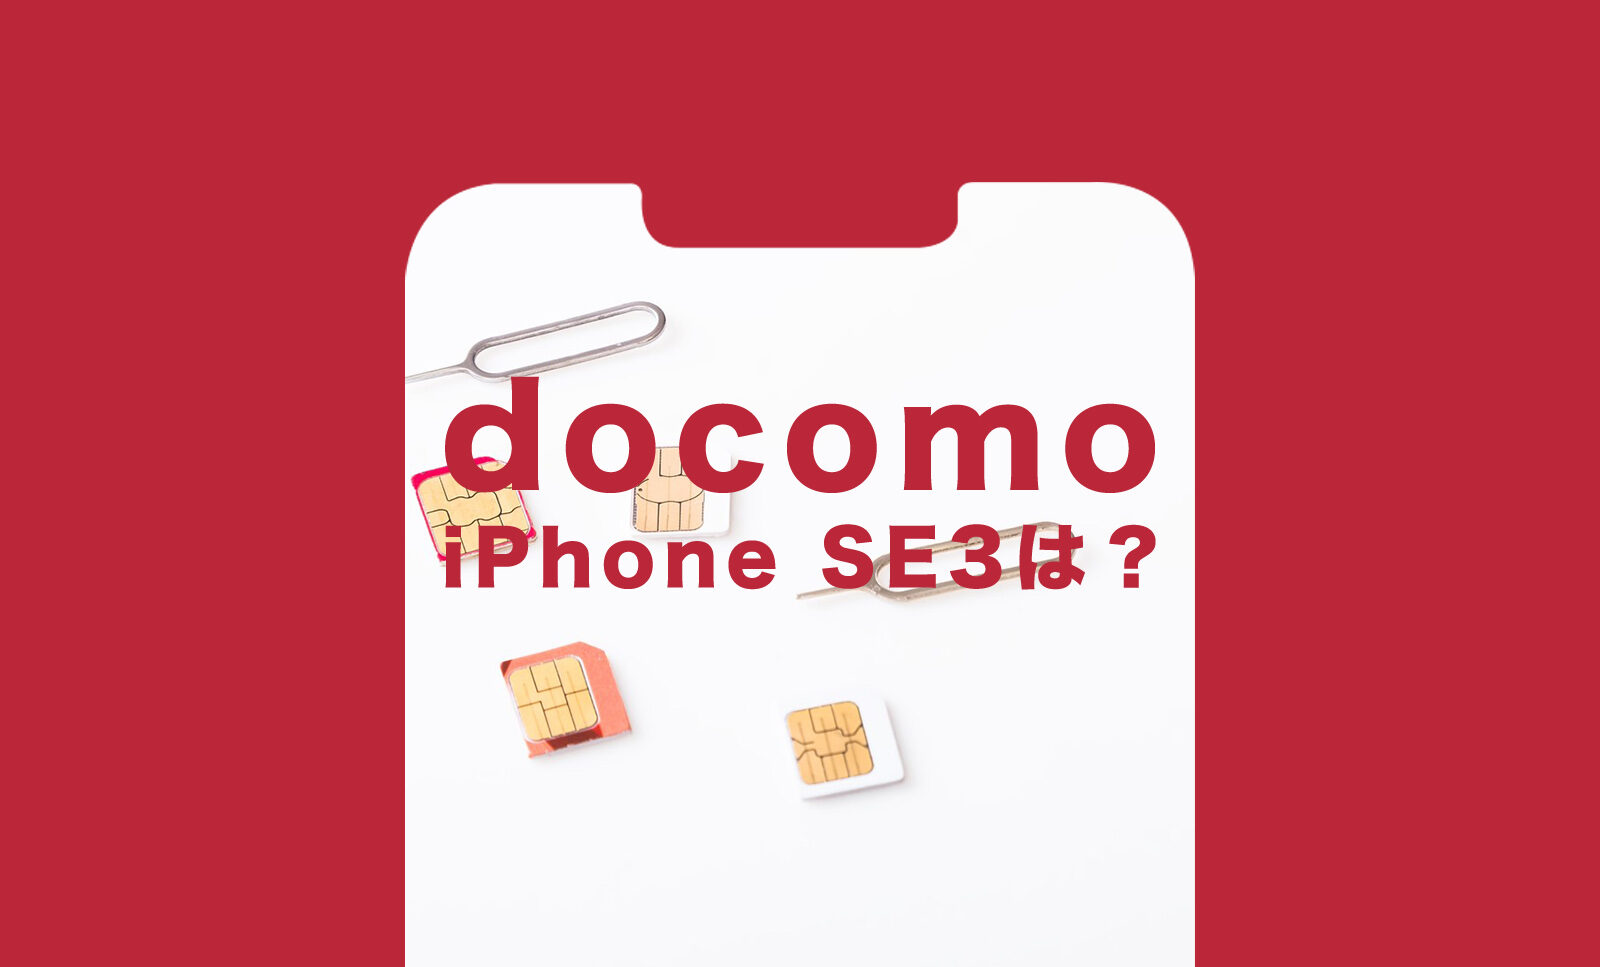 ドコモのiPhone SE3(第3世代)の価格&値段は？【2022年最新】 | アプリポ